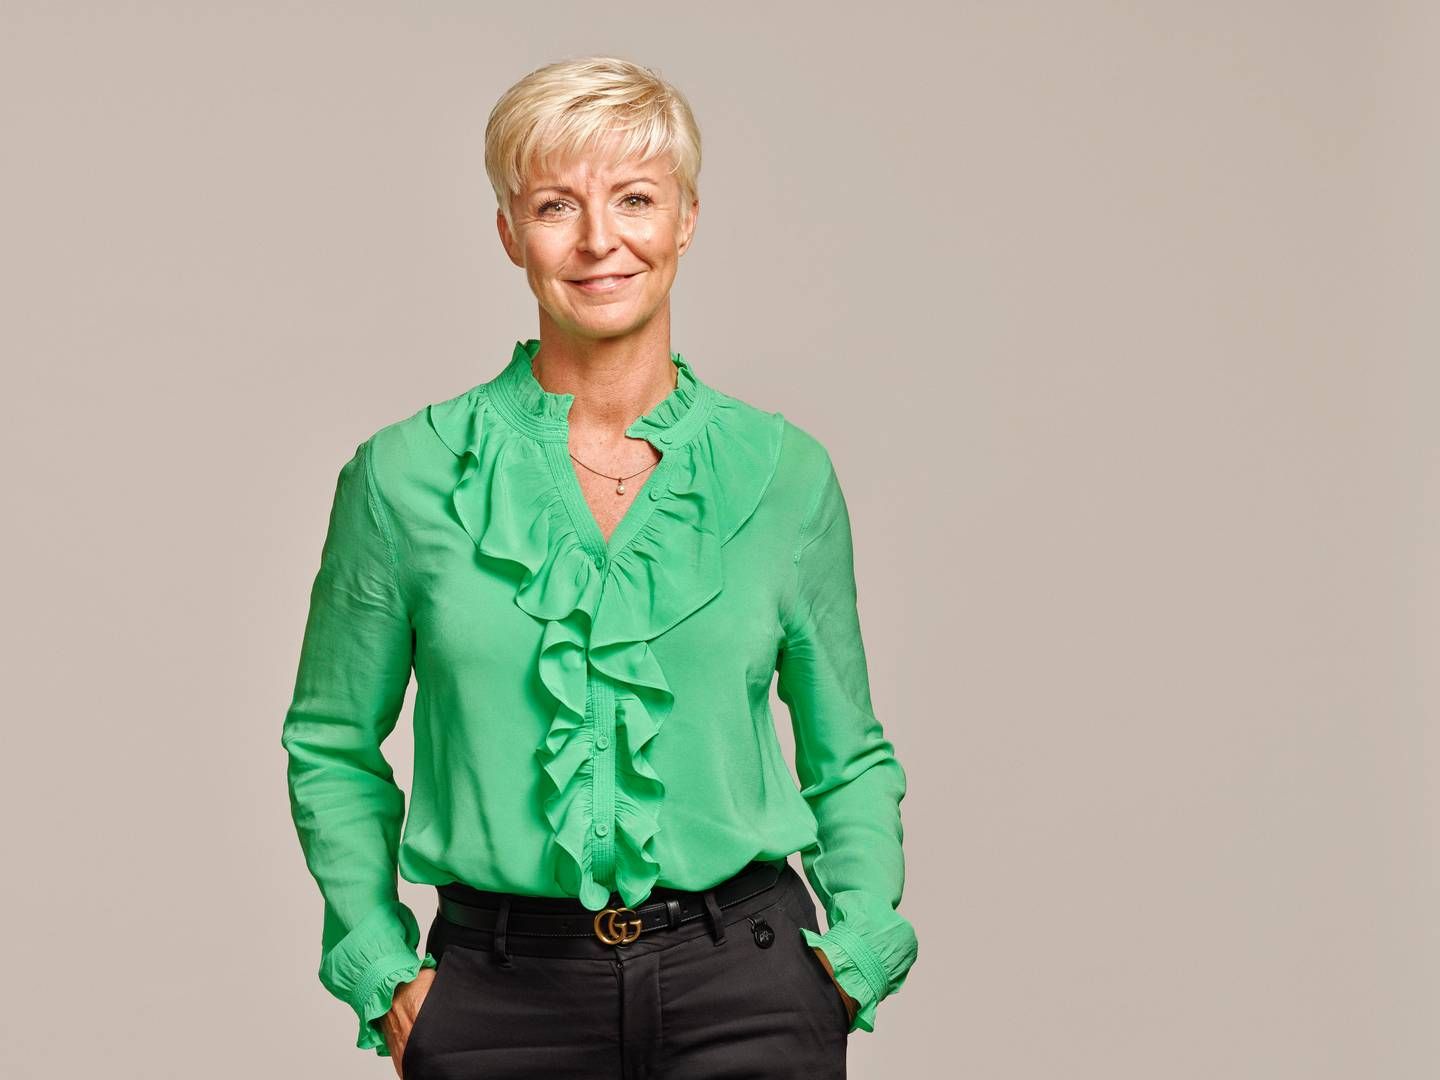 Janne Bjaaland blev i foråret 2022 HR-direktør i Velliv. Tidligere har hun bl.a. arbejdet med kundeservice og salg. | Foto: Pr / Velliv